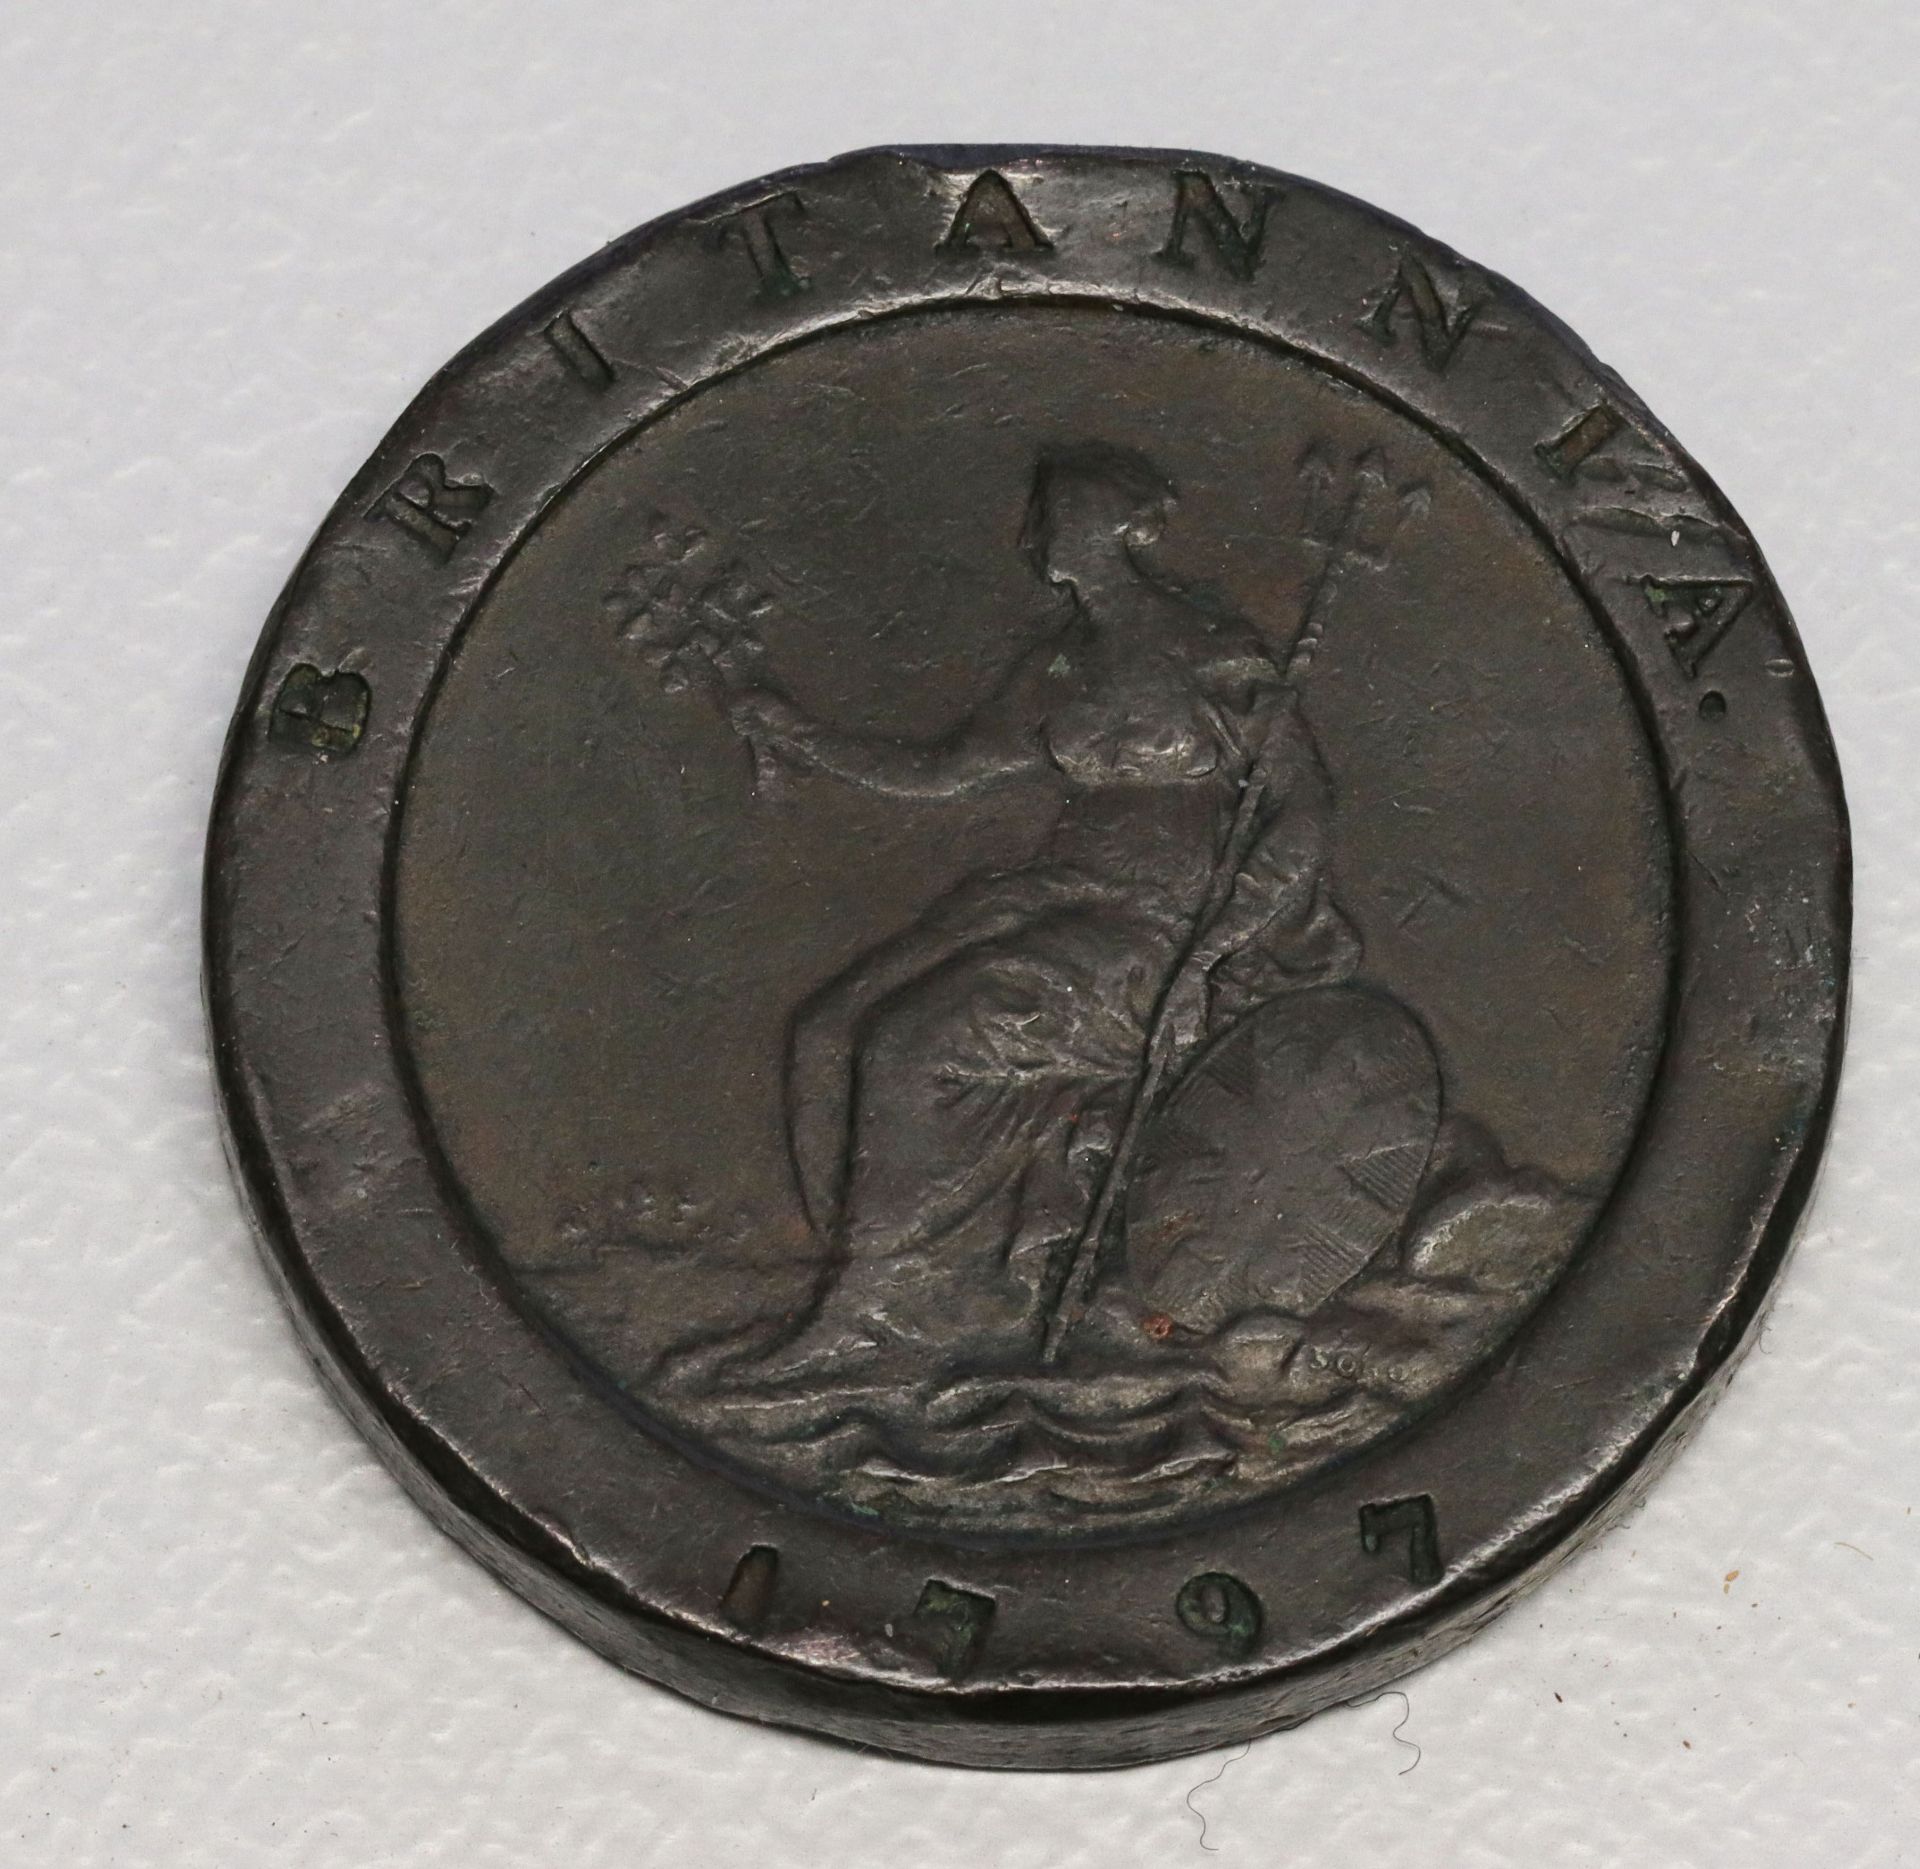 Münzkonvolut, Sammlungsauflösung, darunter: 2 Pence Großbritannien Cartwheel König Georg III. 1797 < - Bild 2 aus 4